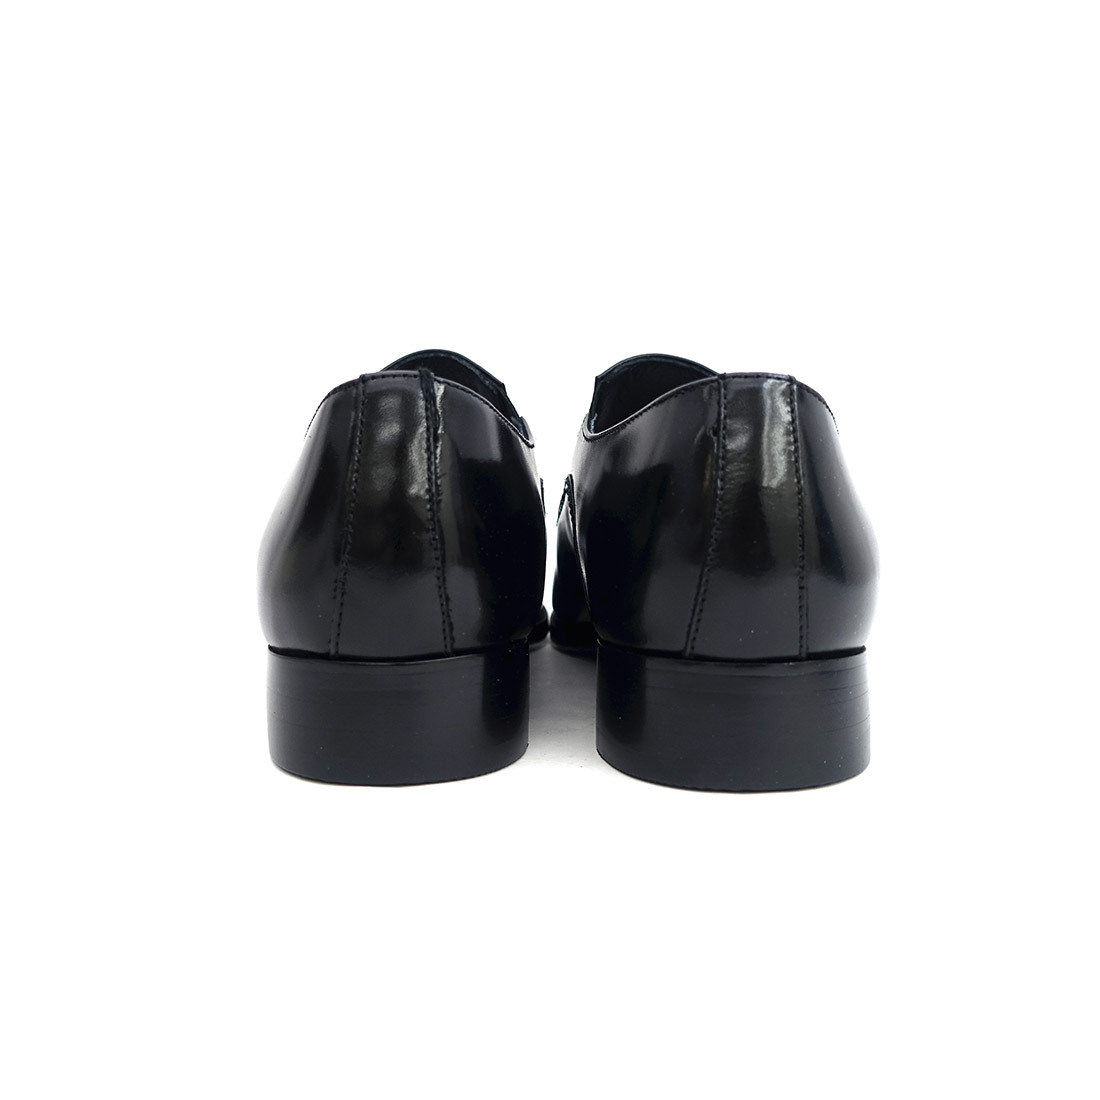 ▲アントニオ ドゥカティ 1803 ビジネスシューズ 靴 メンズ ストレートチップ 日本製 革靴 ブラック Black 黒 26.5cm (0910010717-bk-s265)_画像5